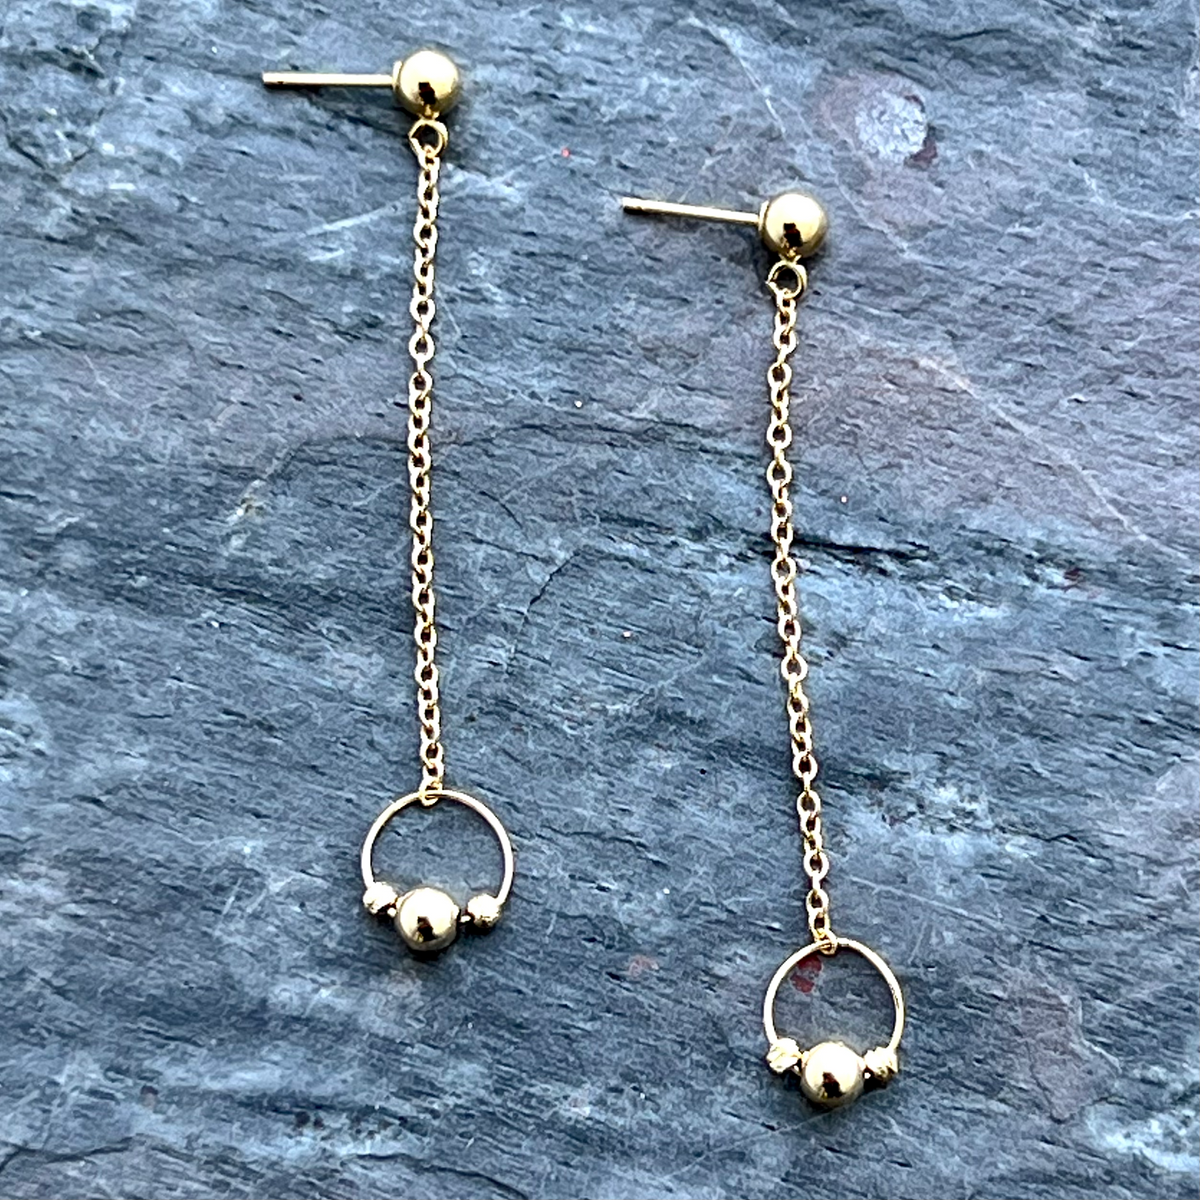 Gold chain earrings by Garden of Silver in Westhampton Beach, NY www.gardenofsilver.com